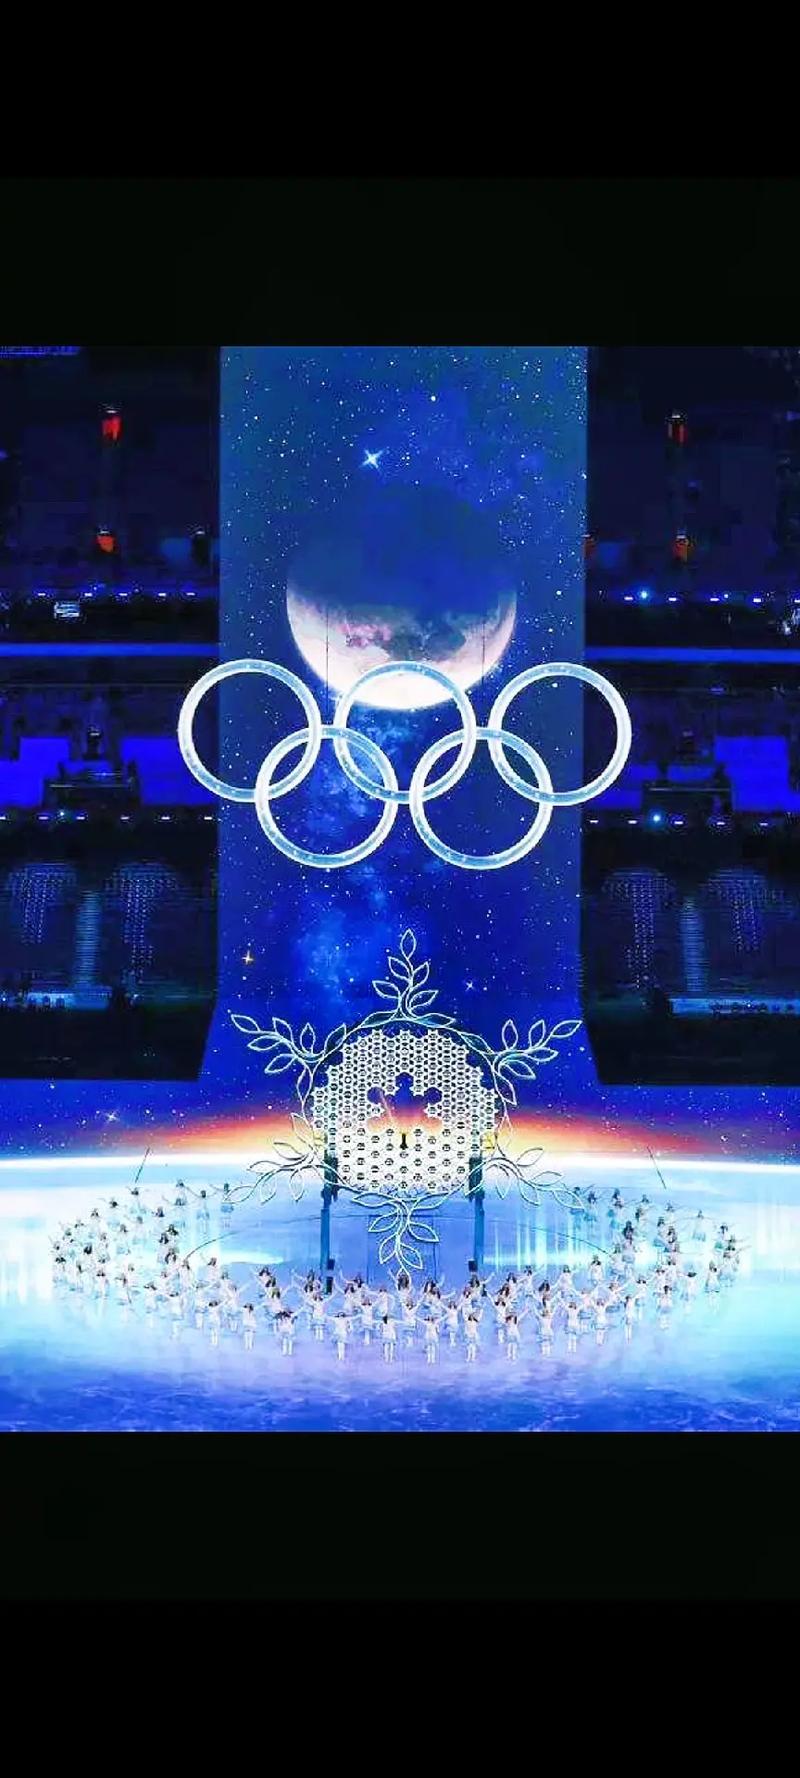 北京冬奥会开幕式全部回顾